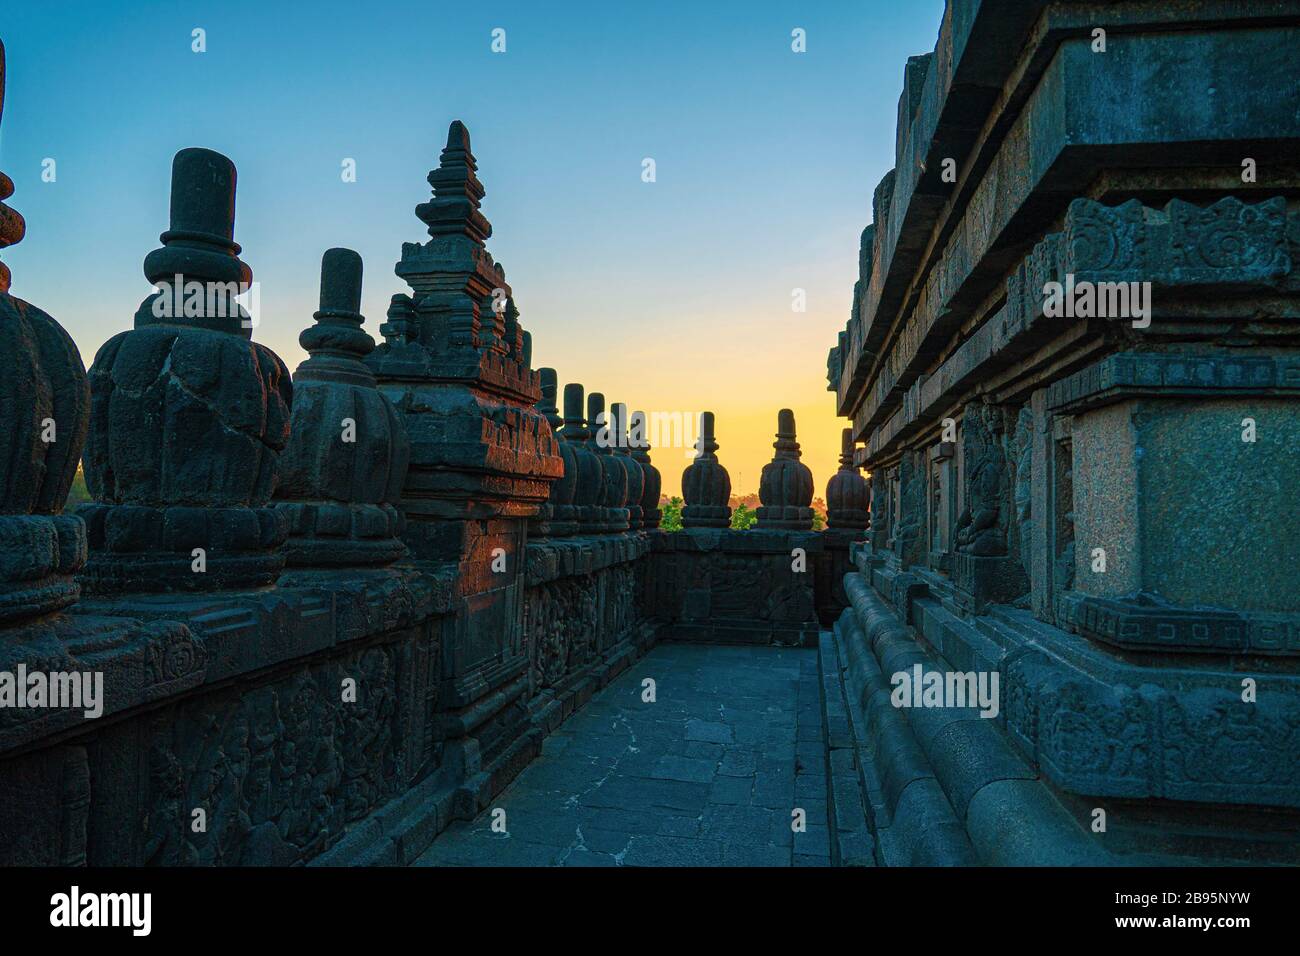 Prambanan-Tempel, UNESCO-Weltkulturerbe bei Sonnenuntergang. Einer der muss Orte in Zentraljava und Indonesien besuchen, um die schönen Tempel zu bewundern. Stockfoto